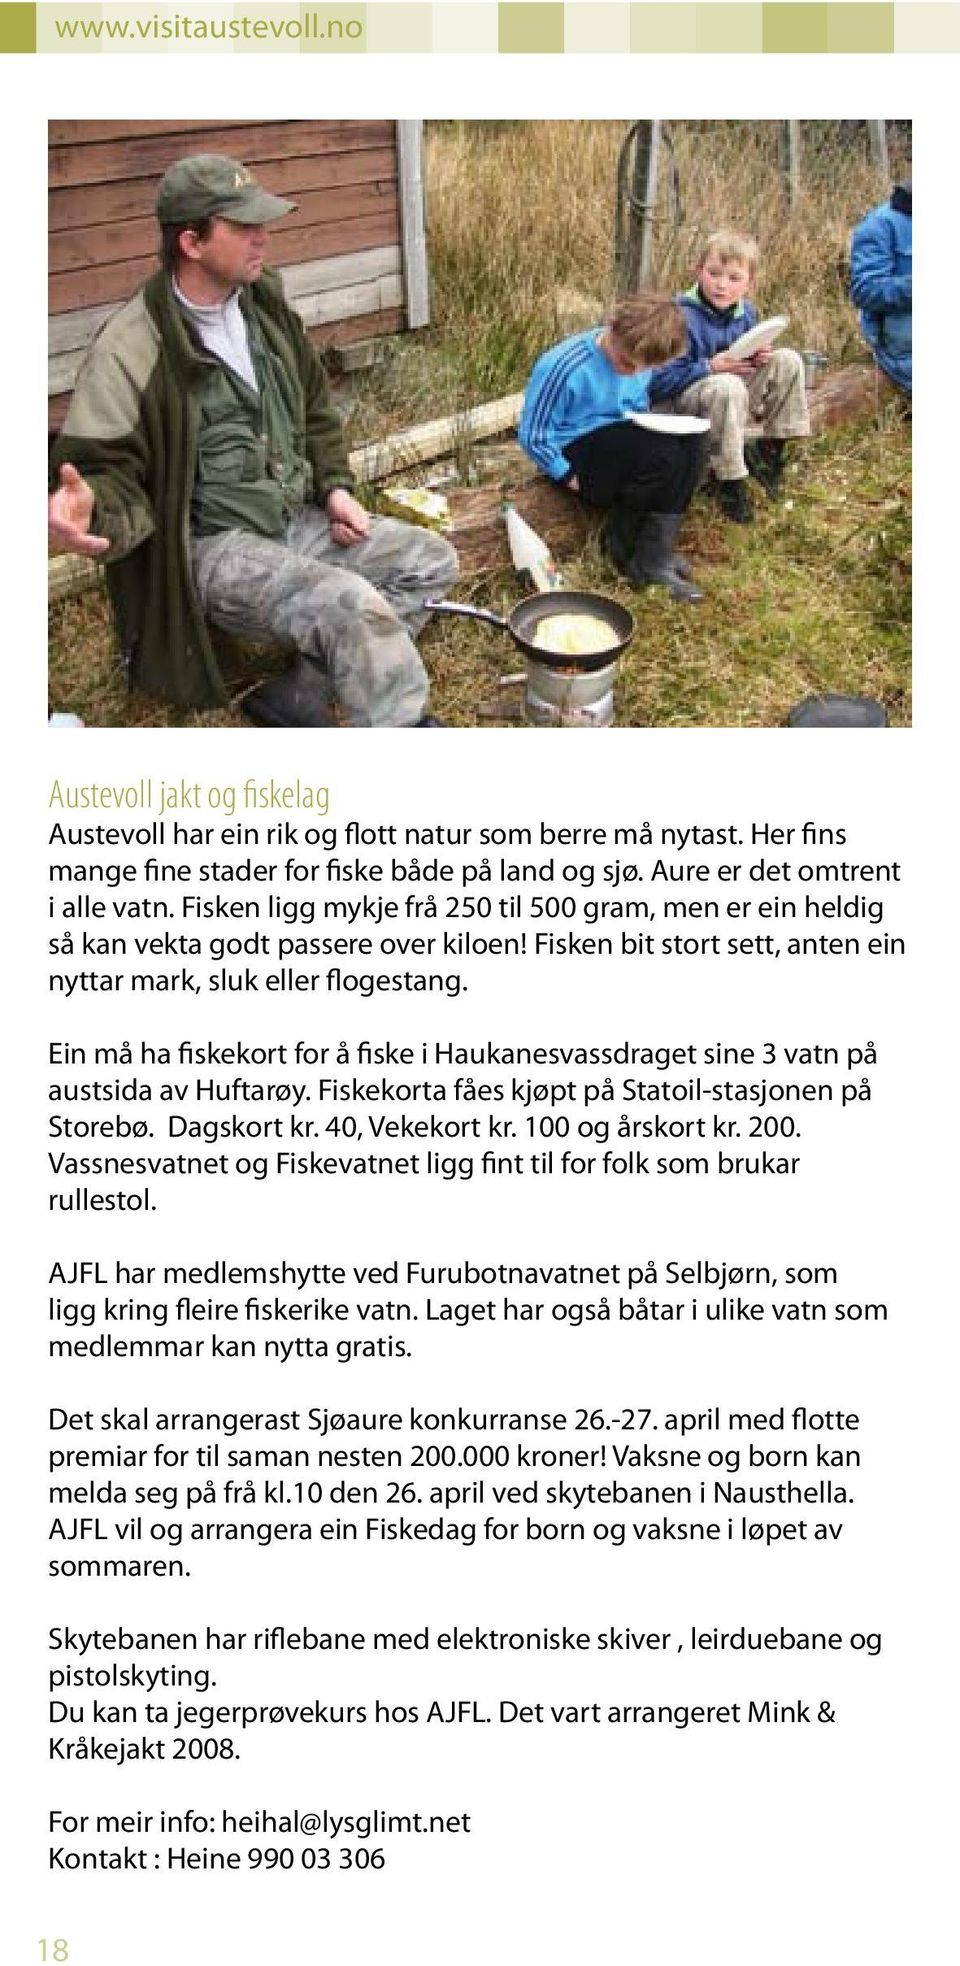 Ein må ha fiskekort for å fiske i Haukanesvassdraget sine 3 vatn på austsida av Huftarøy. Fiskekorta fåes kjøpt på Statoil-stasjonen på Storebø. Dagskort kr. 40, Vekekort kr. 100 og årskort kr. 200.